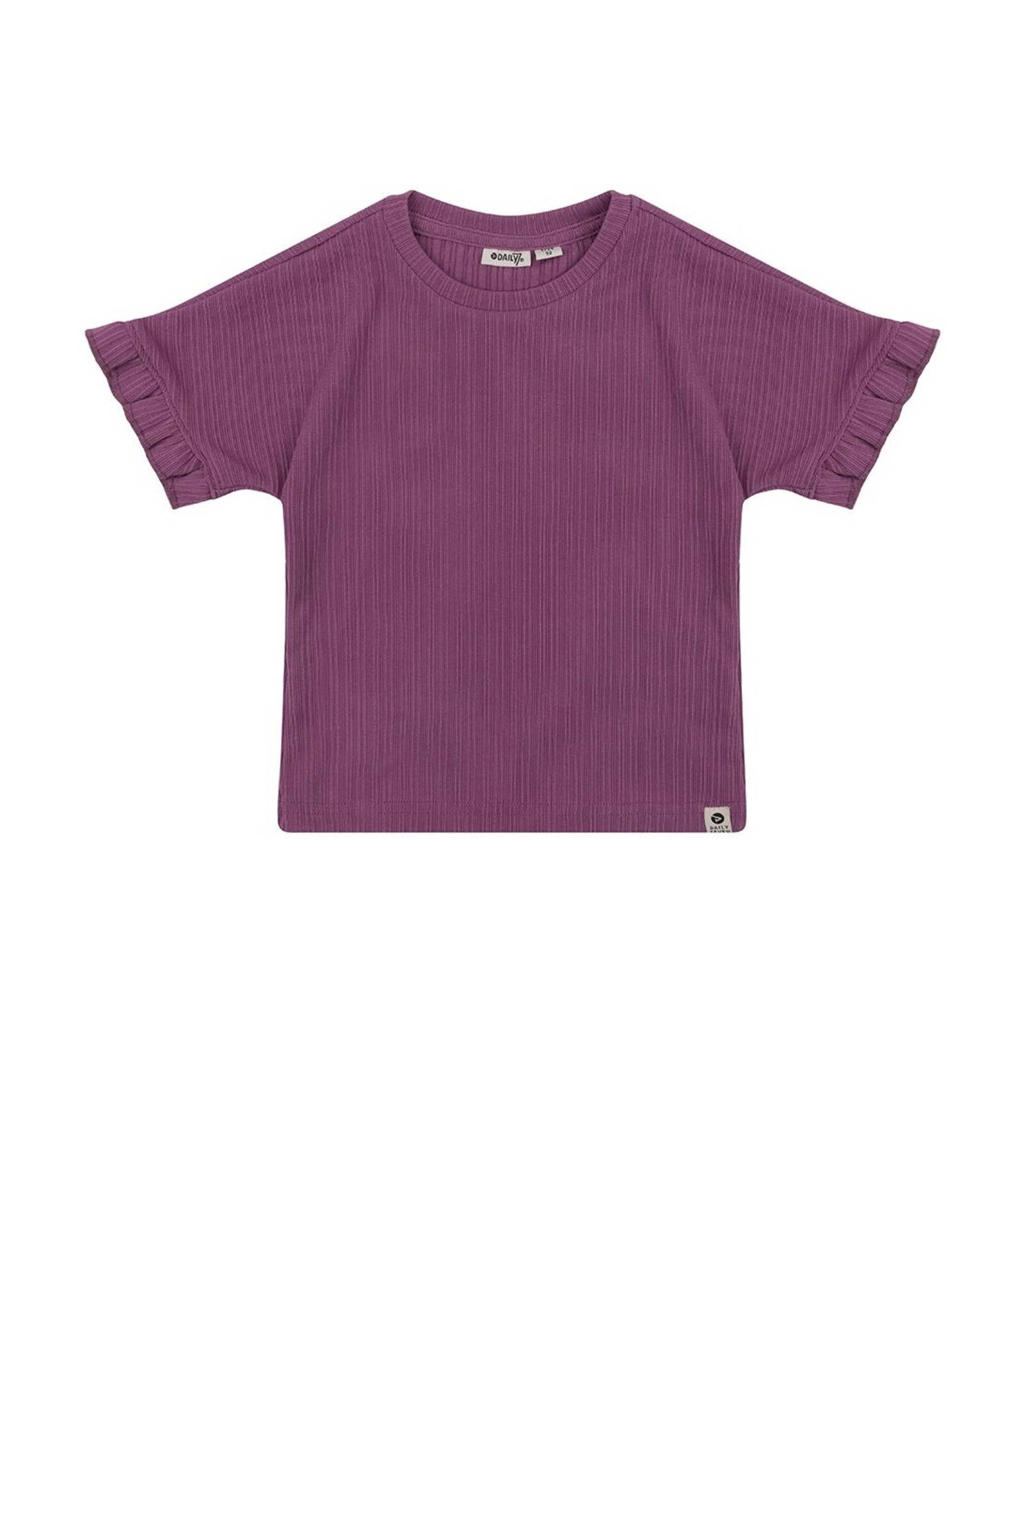 Paarse meisjes Daily7 T-shirt van polyester met korte mouwen, ronde hals en ruches